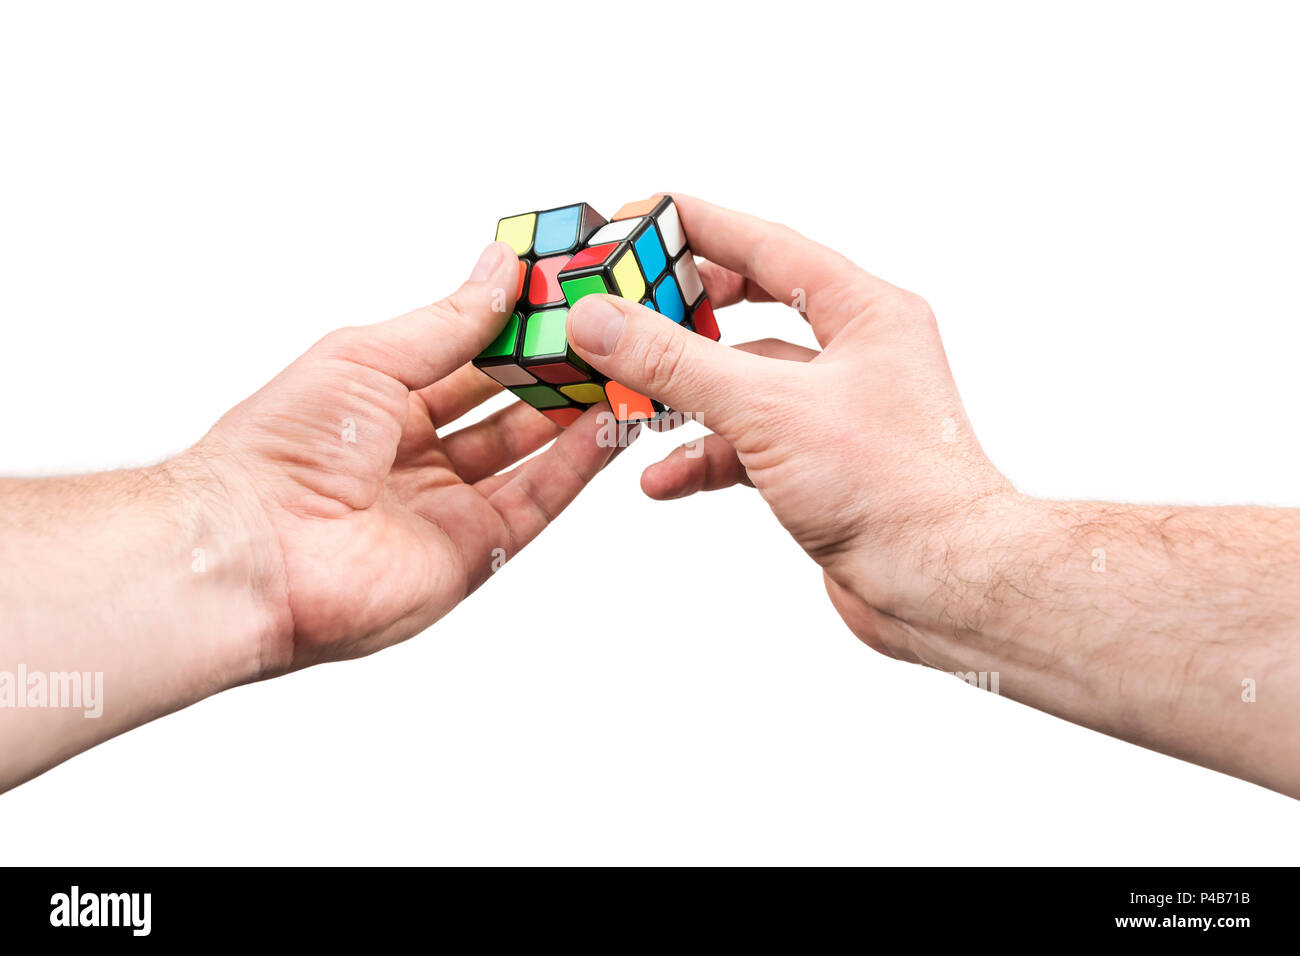 Kharkov, Ucraina - 31 Maggio 2018: Maschio mano che tiene in mano un cubo di Rubik e spin uno dei suoi lati, isolata su uno sfondo bianco, in prima persona Foto Stock